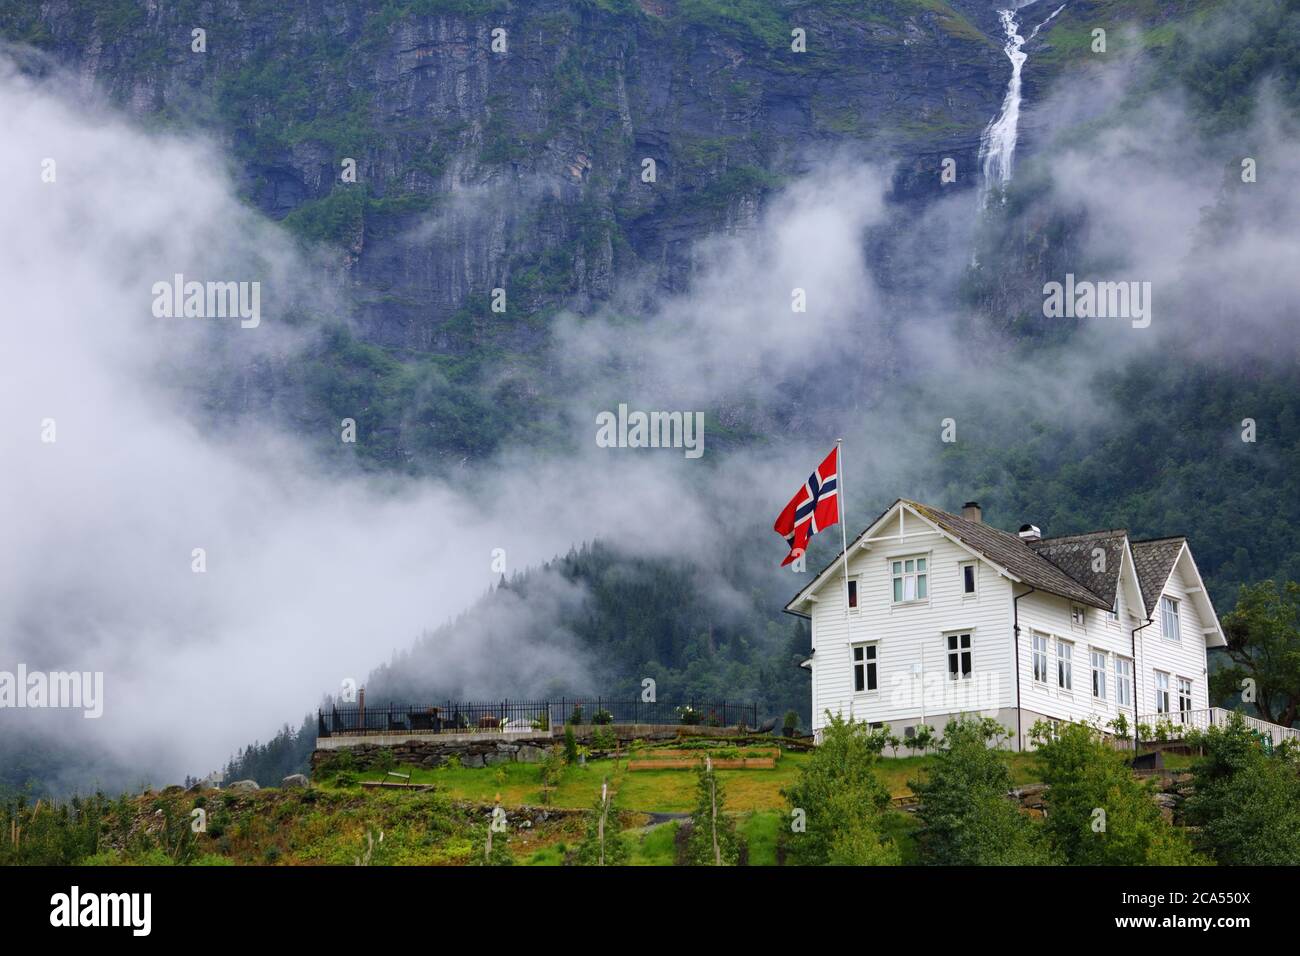 Ullensvang Stadt in Norwegen. Neblige Berge und ein Wasserfall. Norwegische Landschaft. Stockfoto